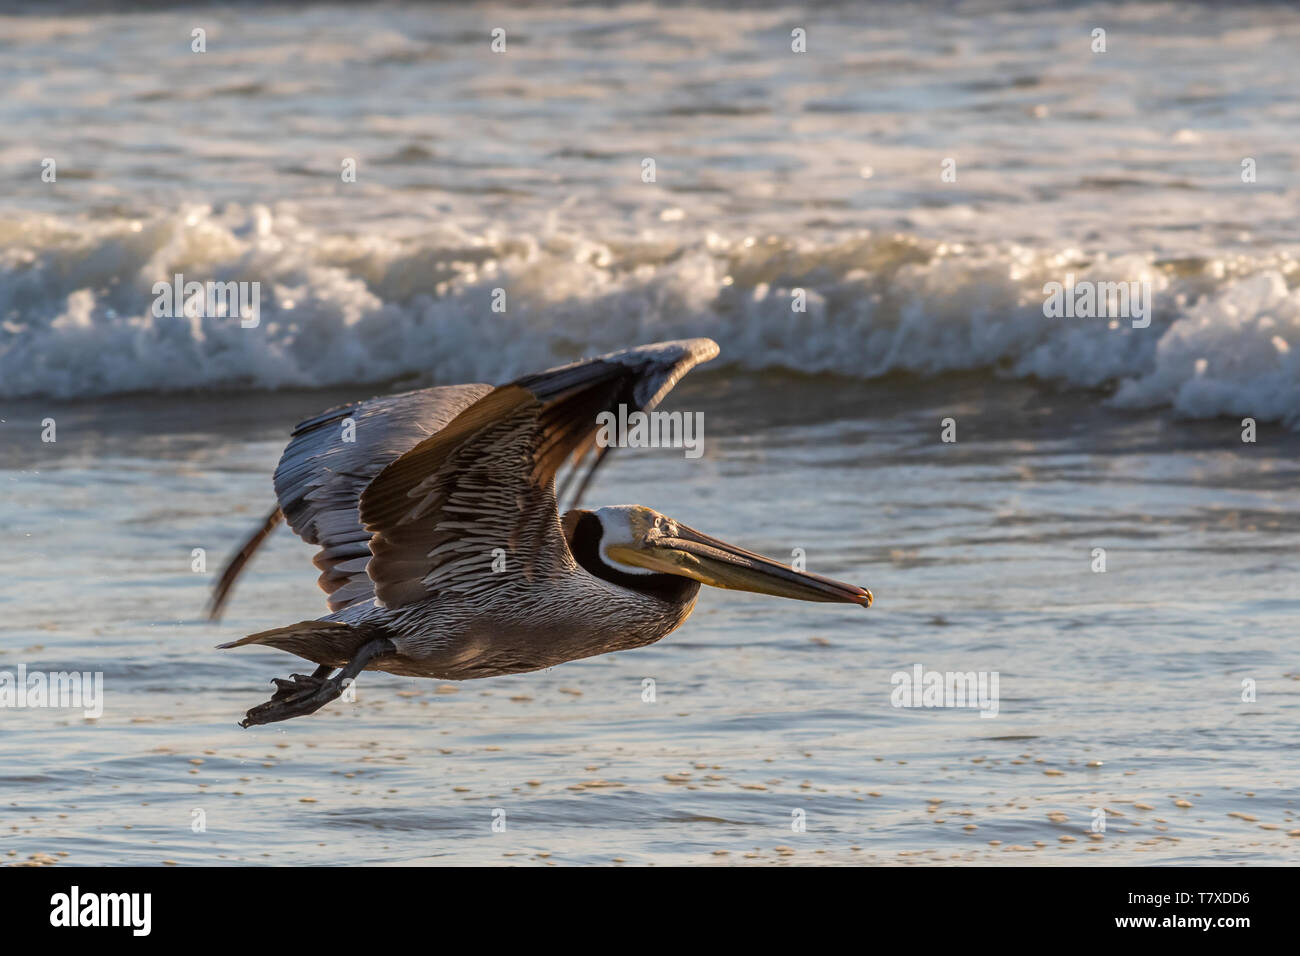 Pellicano marrone (Pelecanus occidentalis) volando a bassa quota sopra una spiaggia con onde che si infrangono in background in Californa Baja California Sur, Messico. Foto Stock